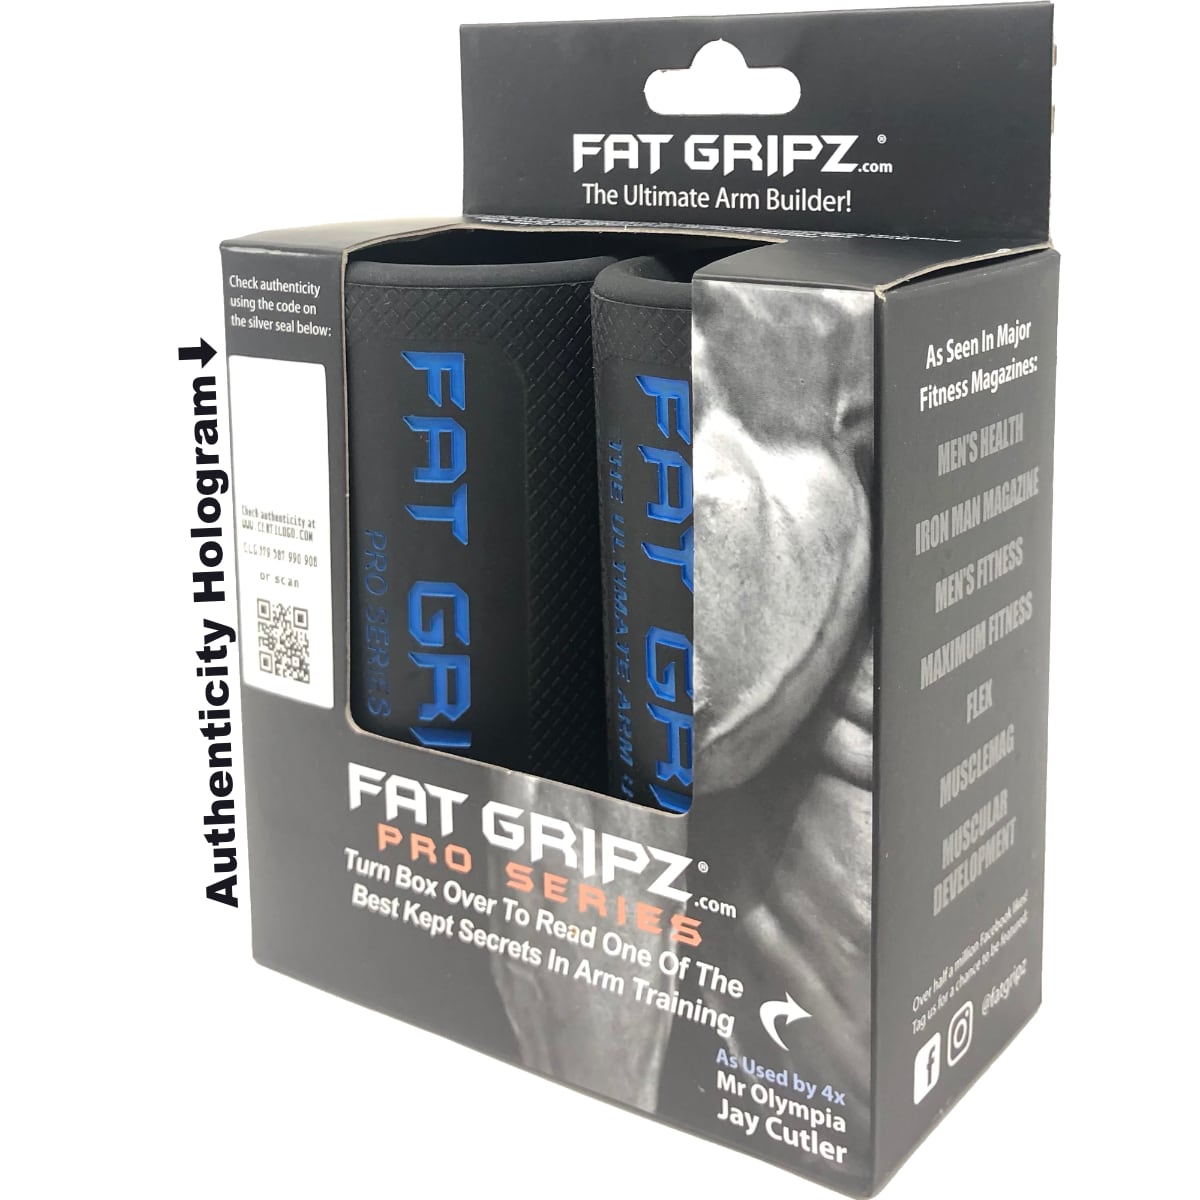 FAT GRIPZ(Original) – MuscleShapper